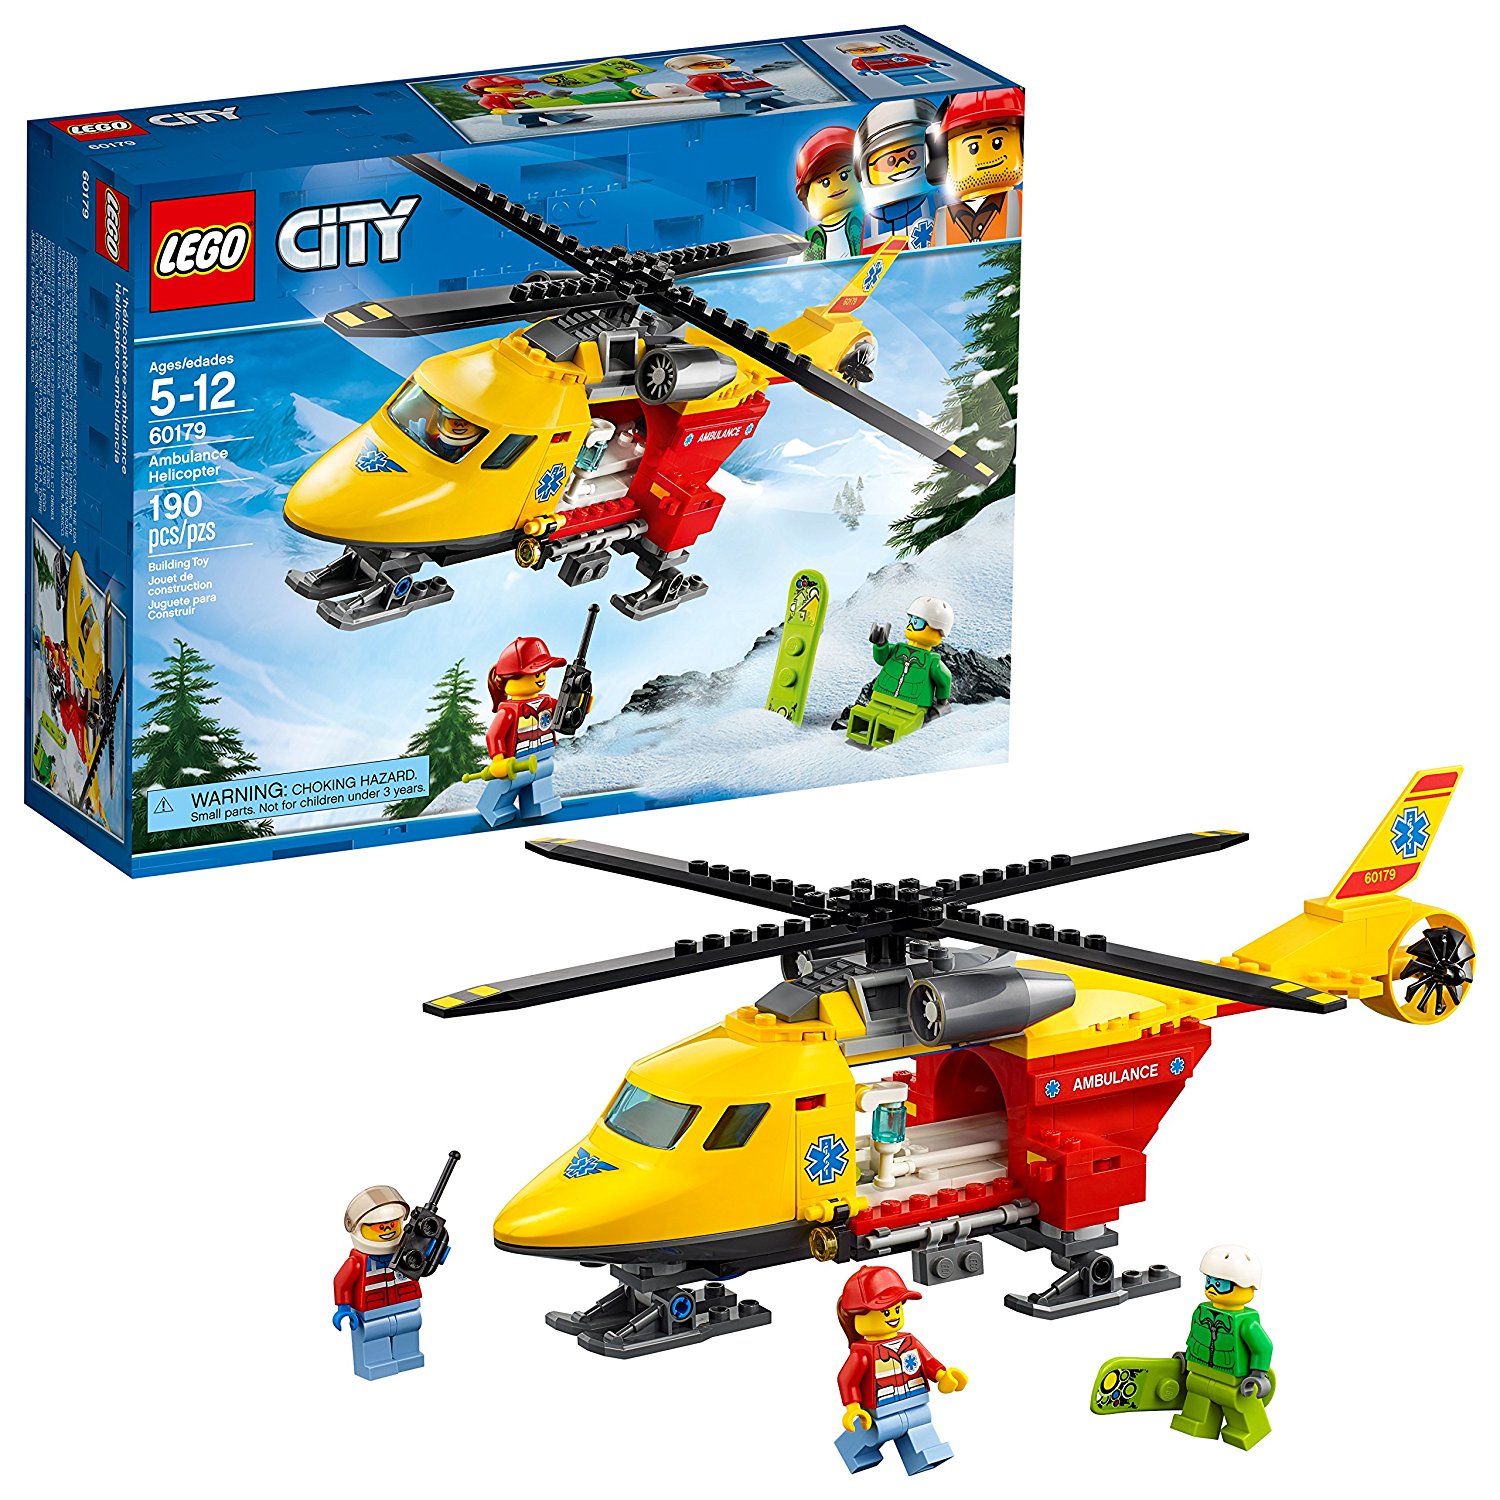 Amazon.com: LEGO City Ambulance Helicopter 60179 Building Kit (190 ...